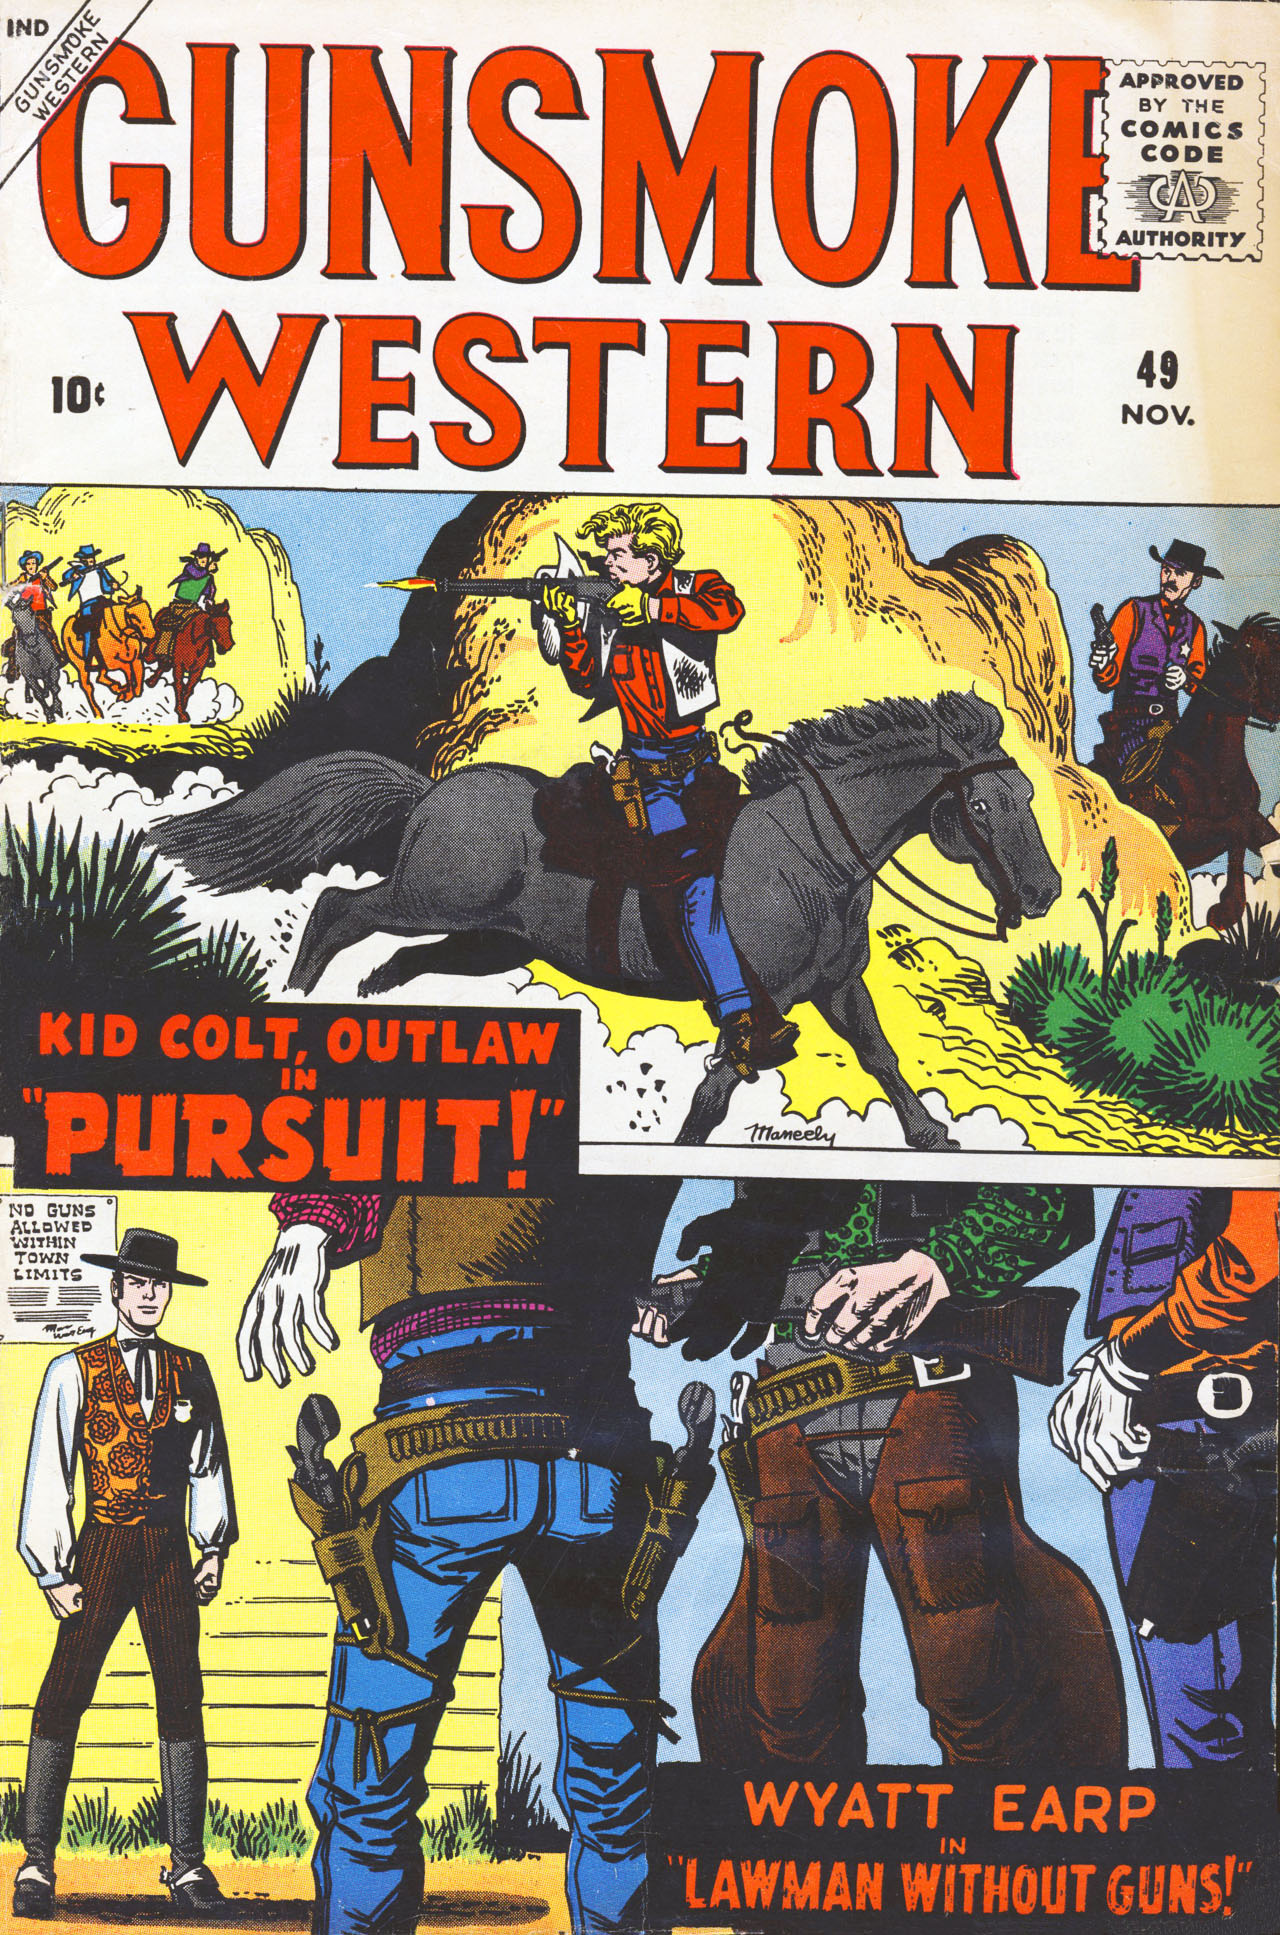 Read online Gunsmoke Western comic -  Issue #49 - 1